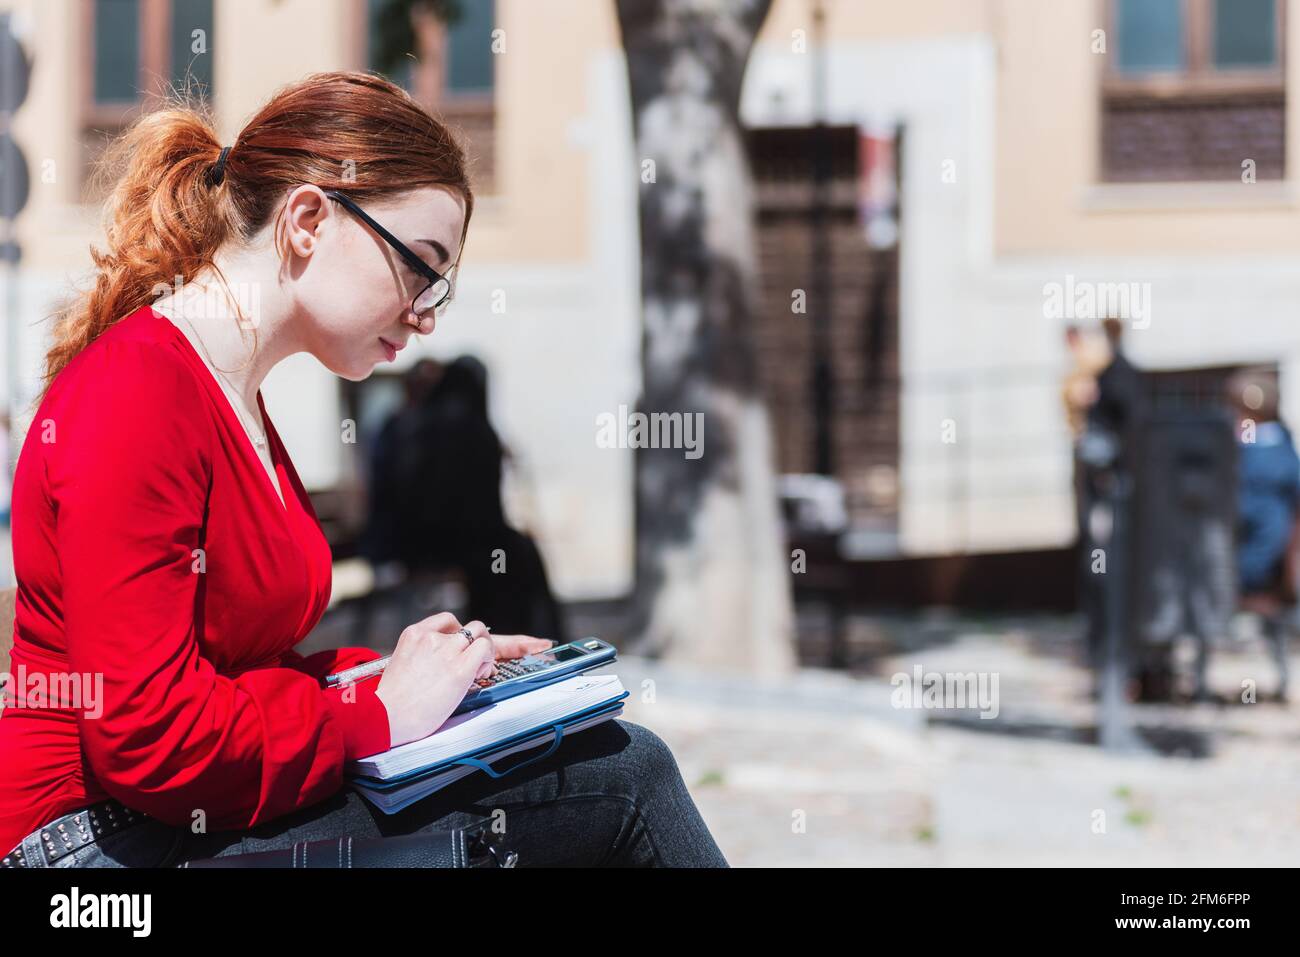 Junge rothaarige Frau mit Brille, die auf einer Bank sitzt, während sie einen Taschenrechner benutzt und etwas in ihr Notizbuch schreibt. In einer roten Bluse gekleidet. Stockfoto